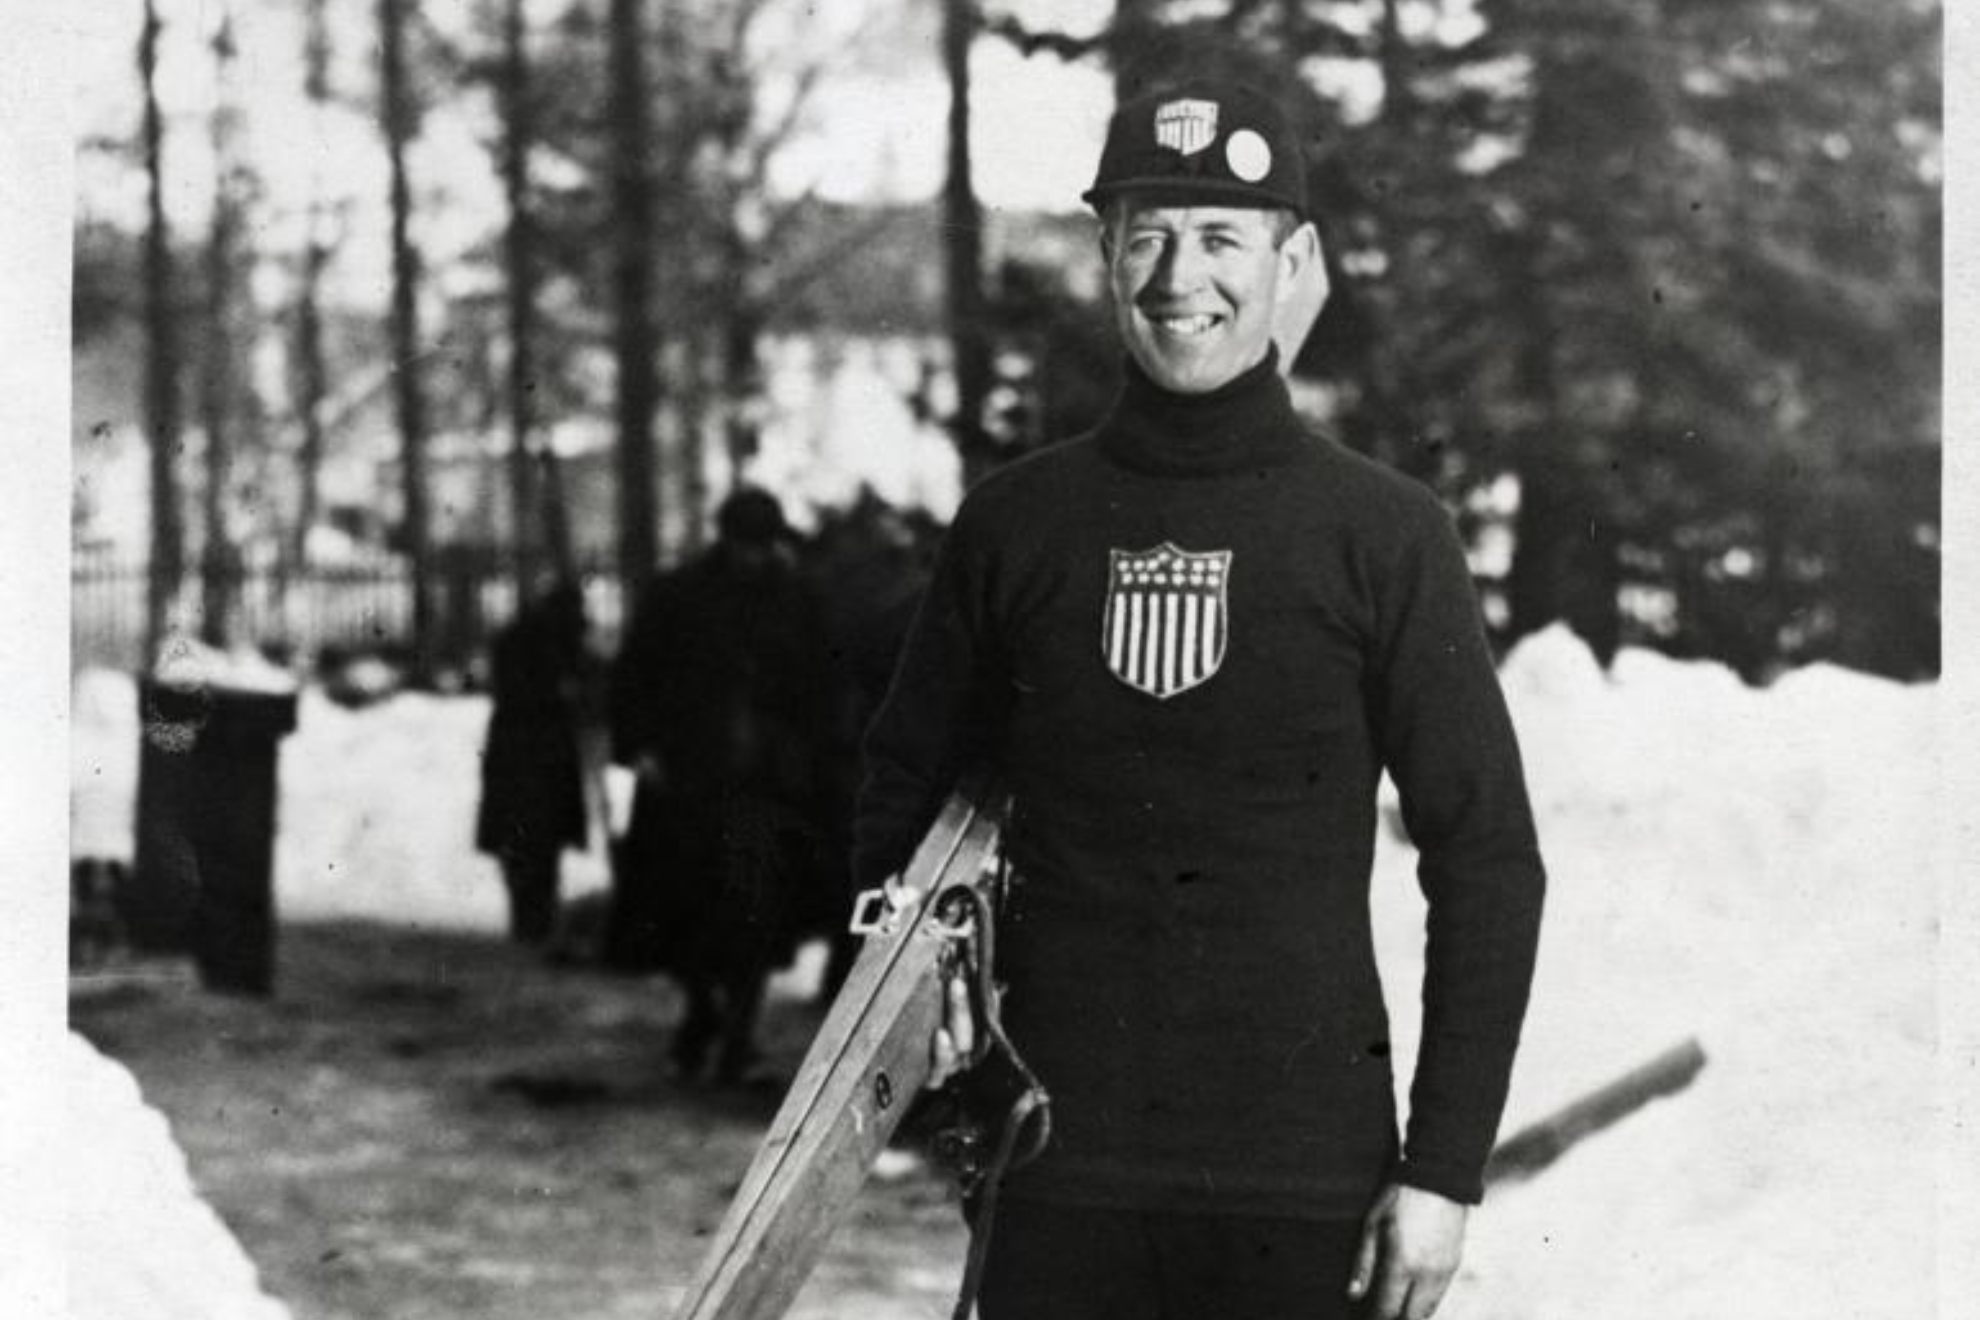 Anders Haugen, en los Juegos Olímpicos de Chamonix 1924.